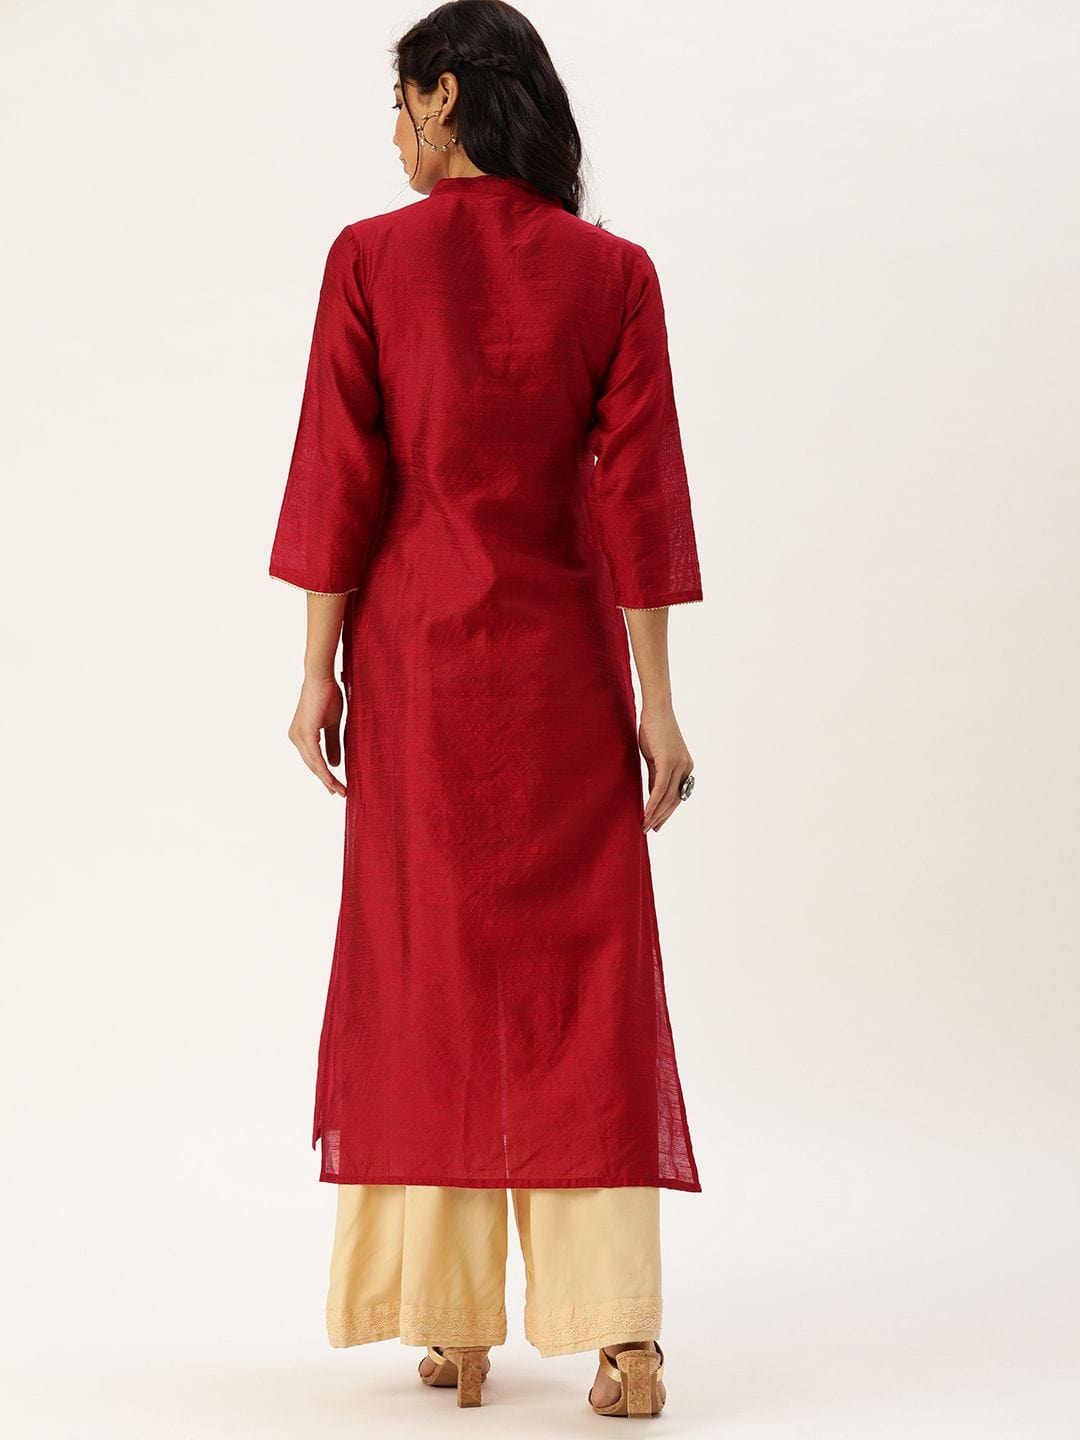 Women's Red & Gold-Toned Embroidered Straight Kurta - Varanga